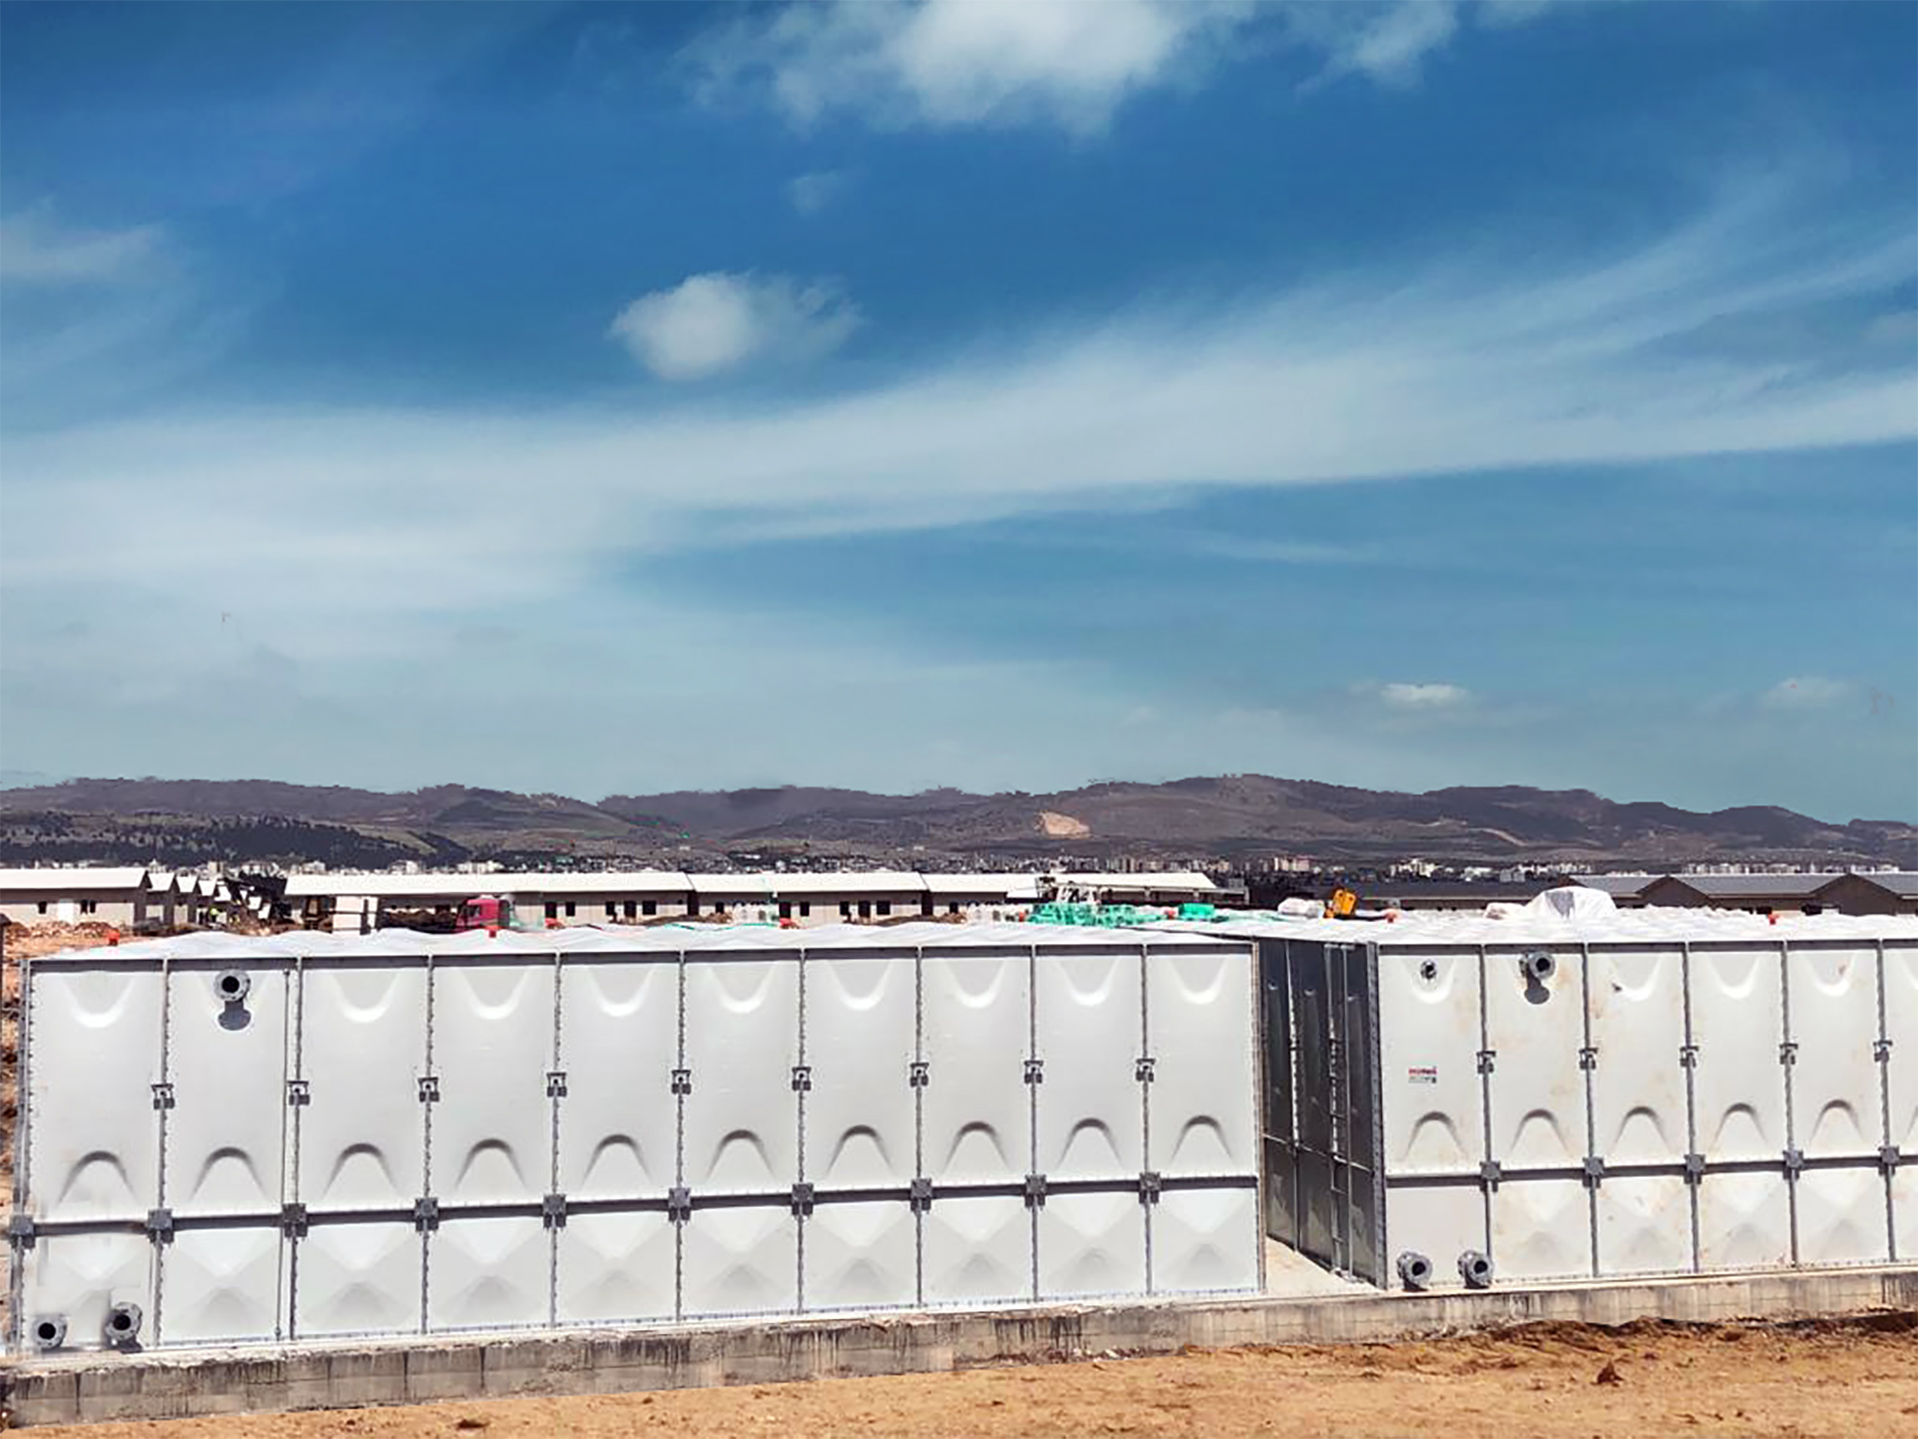 Ekomaxi, Adıyaman’da 12 bin kişilik konteyner kentin suyunu güvenle depolayacak